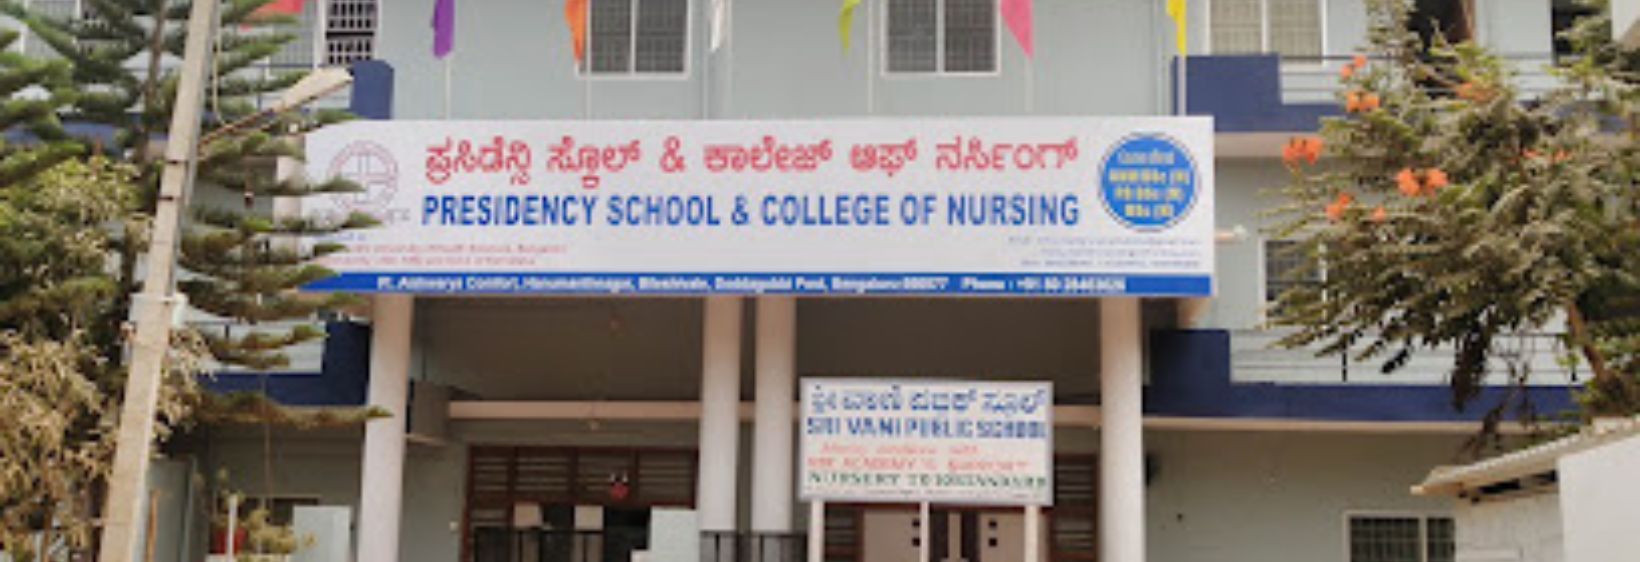 Presidency College of Nursing - Bangalore